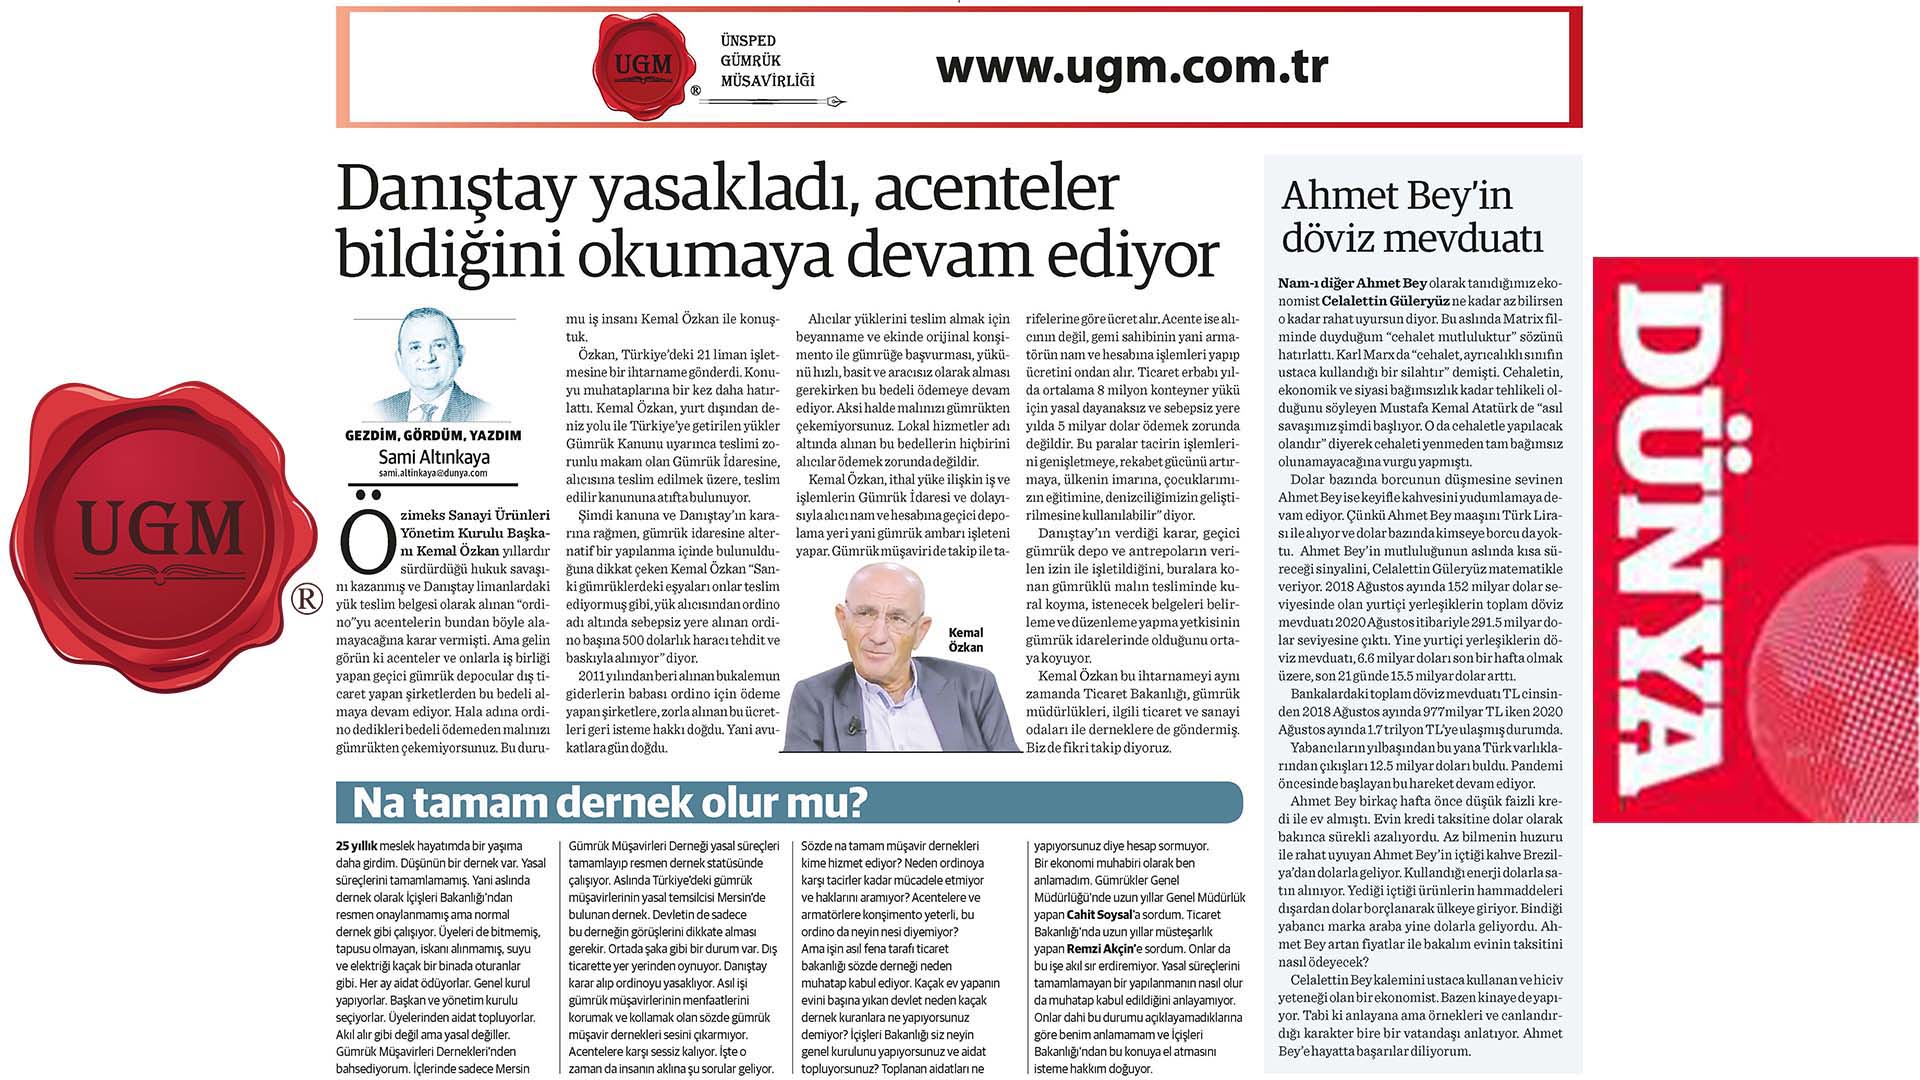 UGM Kurumsal İletişim Direktörümüz Sami Altınkaya'nın " Danıştay yasakladı, acenteler bildiğini okumaya devam ediyor" başlıklı yazısı, 17.08.2020 tarihinde Dünya Gazetesi'nde yayınlandı.